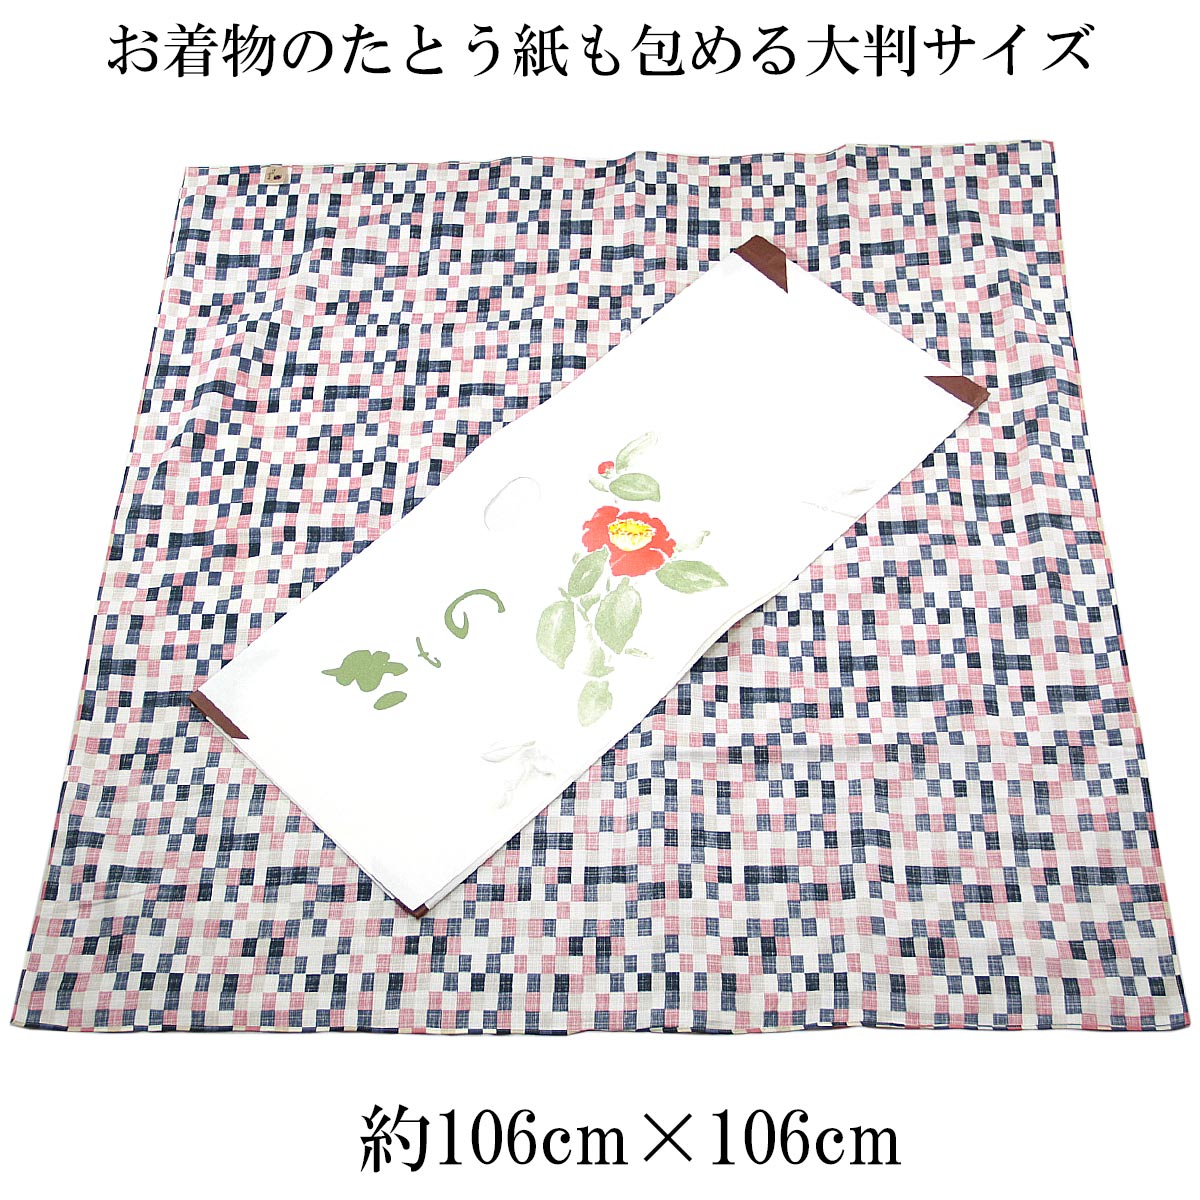 風呂敷 三巾 109cm 市松 モザイクピンク 四方縫い 綿100% 2